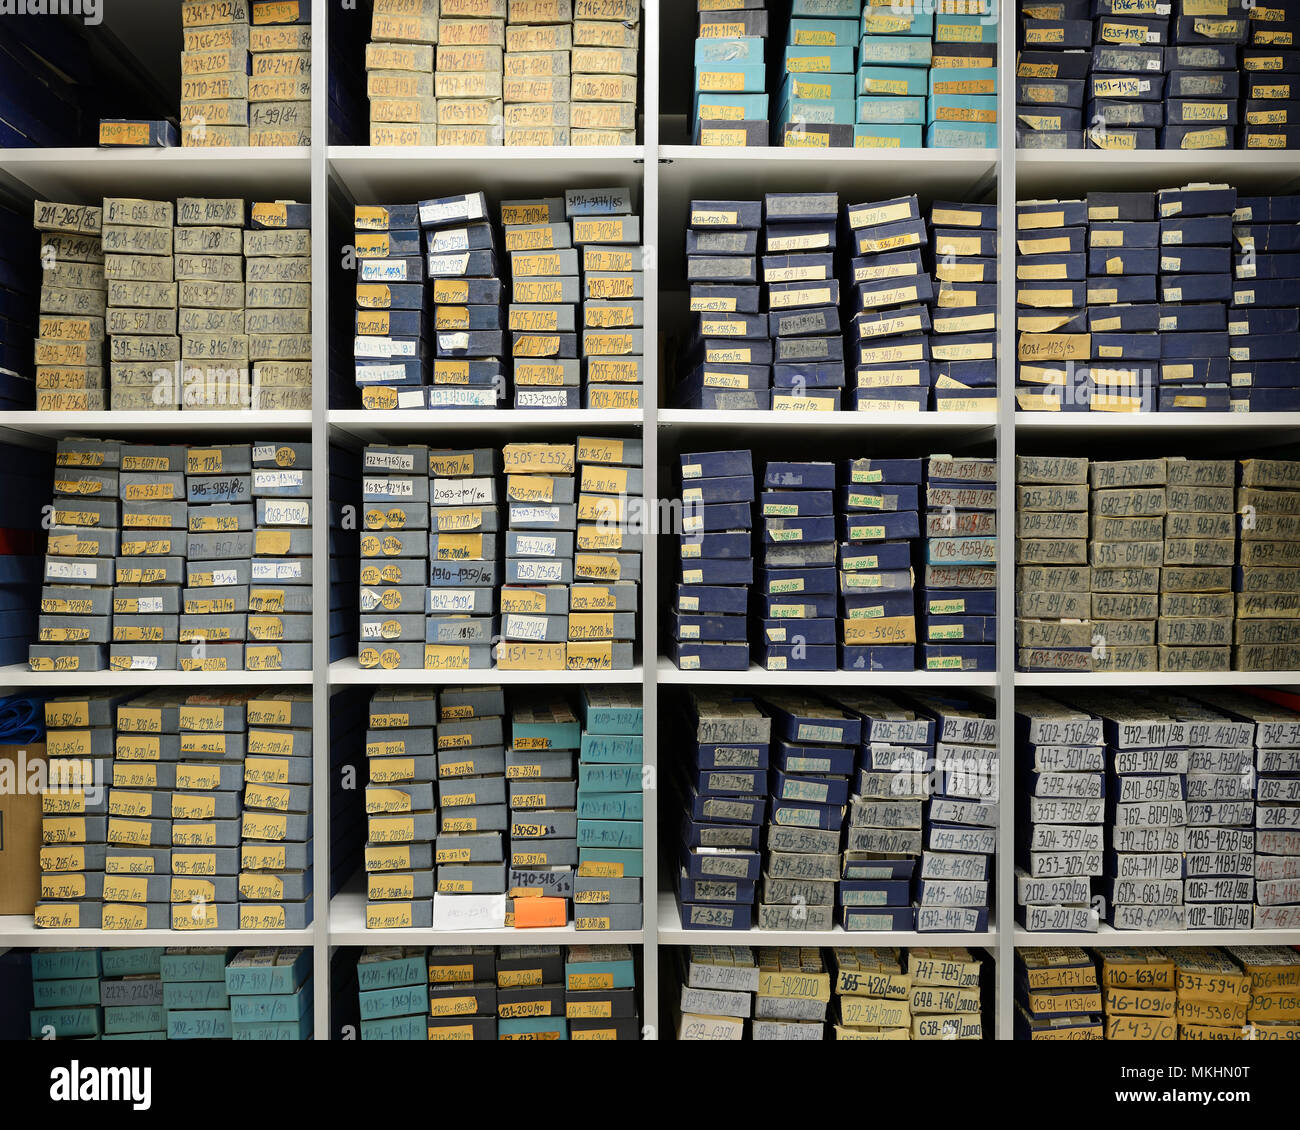 Hospital Archive of Pathology Specimens Stock Photo